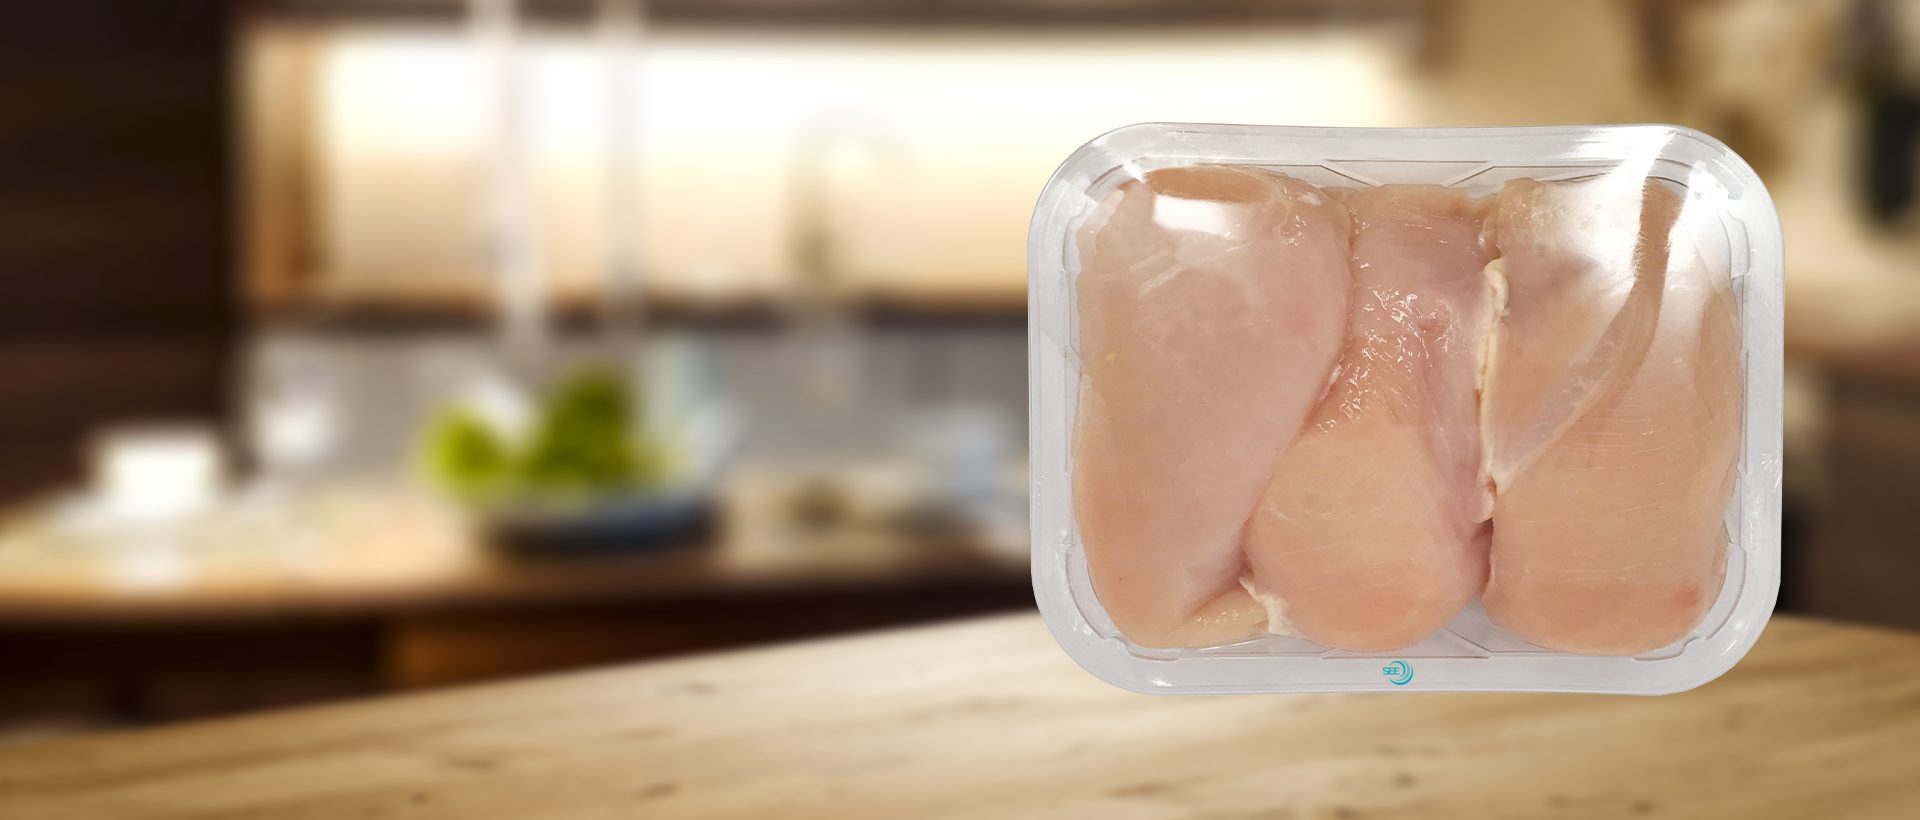 Bandeja transparente pré-formada CRYOVAC com filme de revestimento sobre peitos de frango